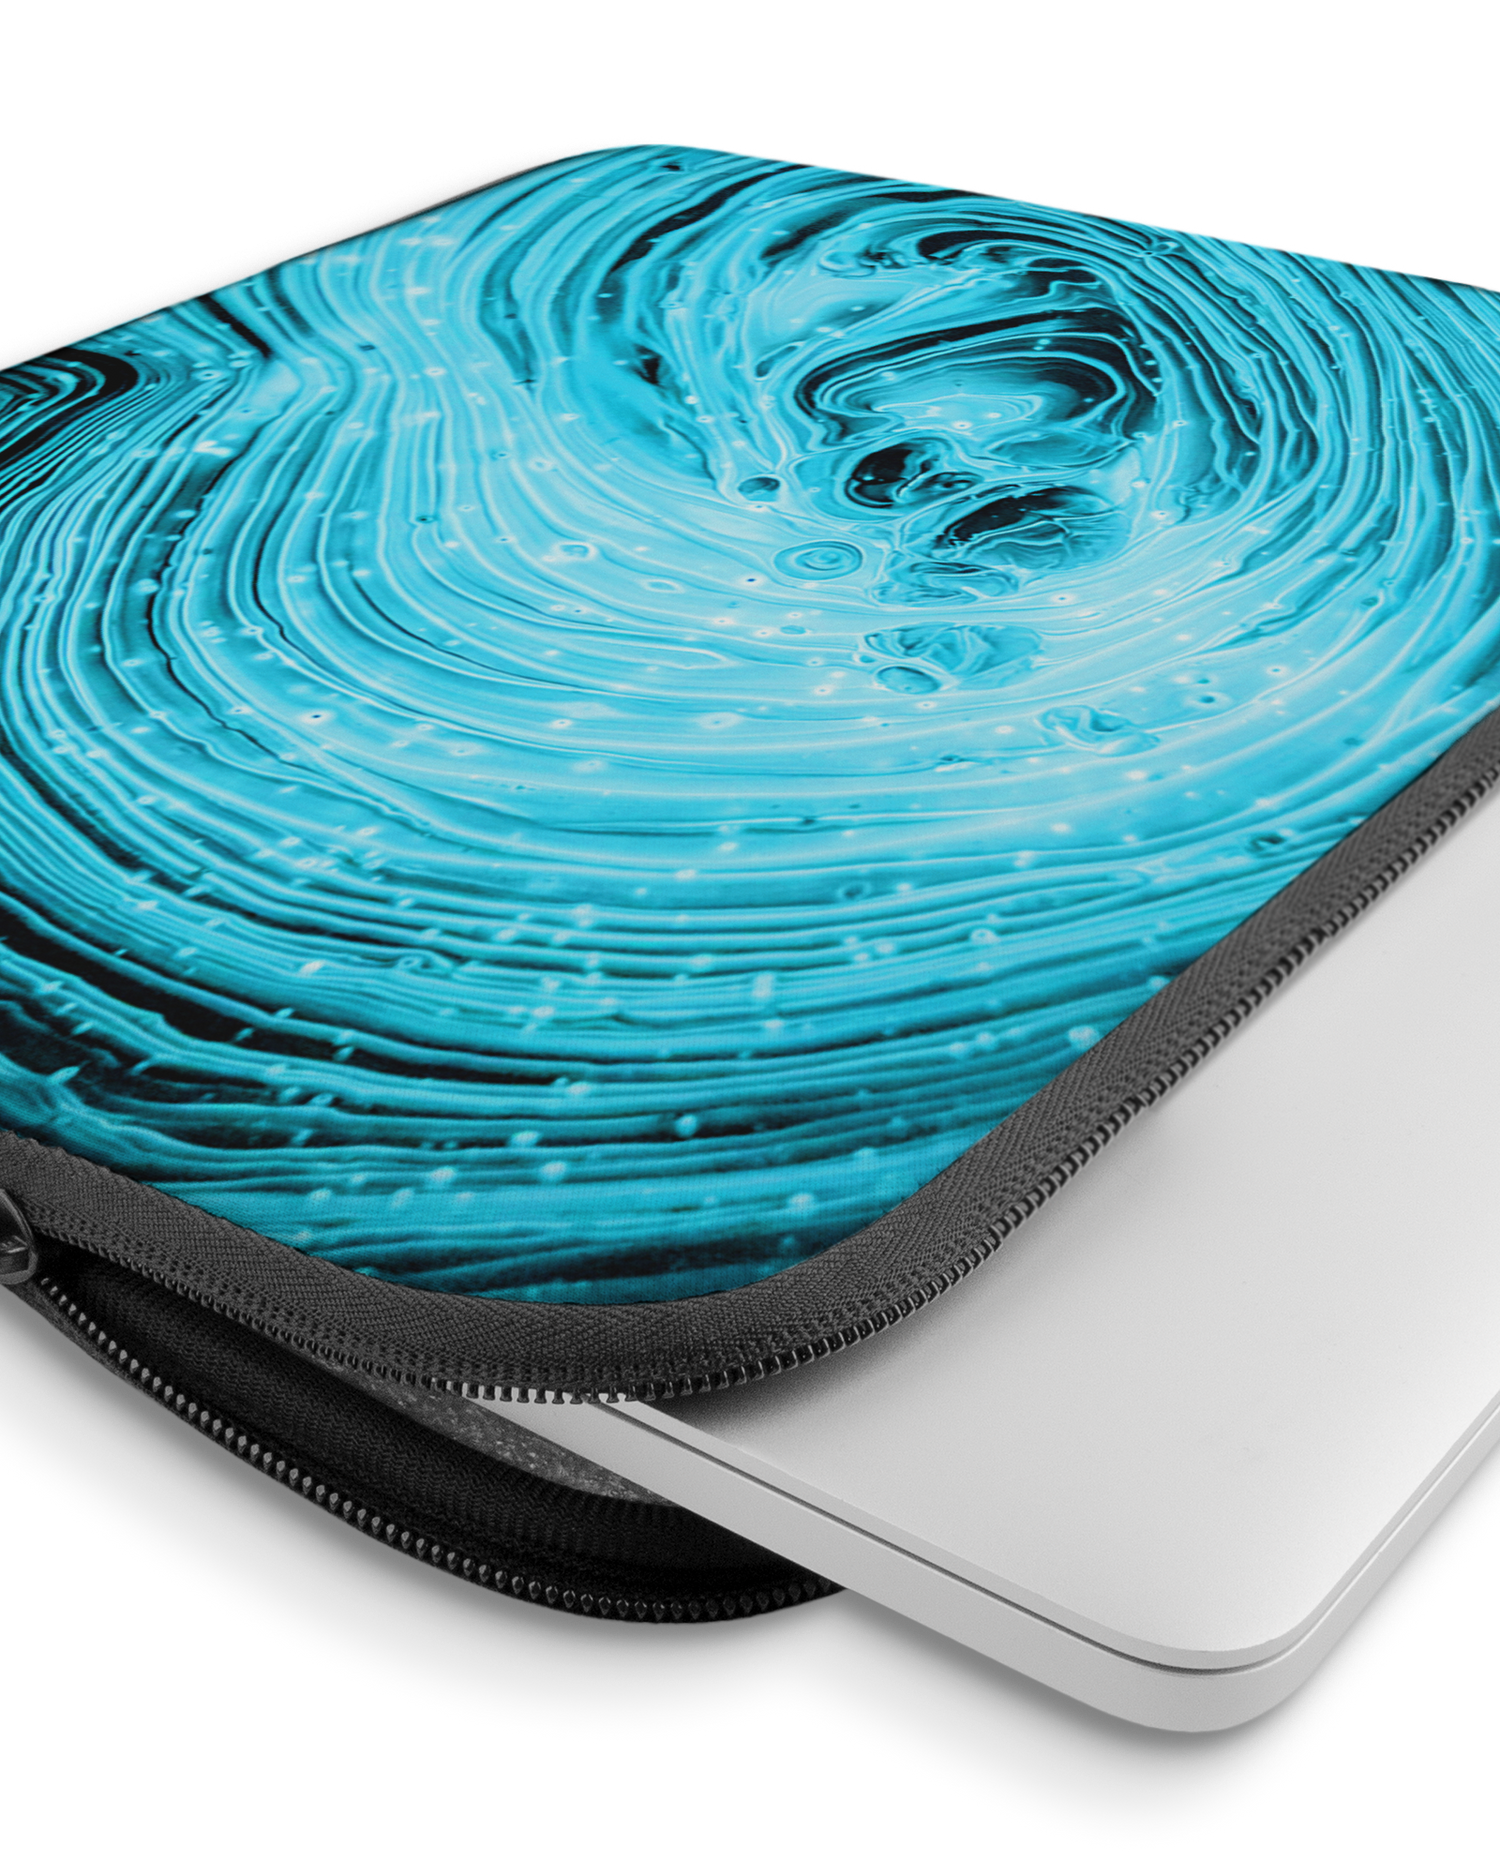 Turquoise Ripples Laptophülle 15 Zoll mit Gerät im Inneren